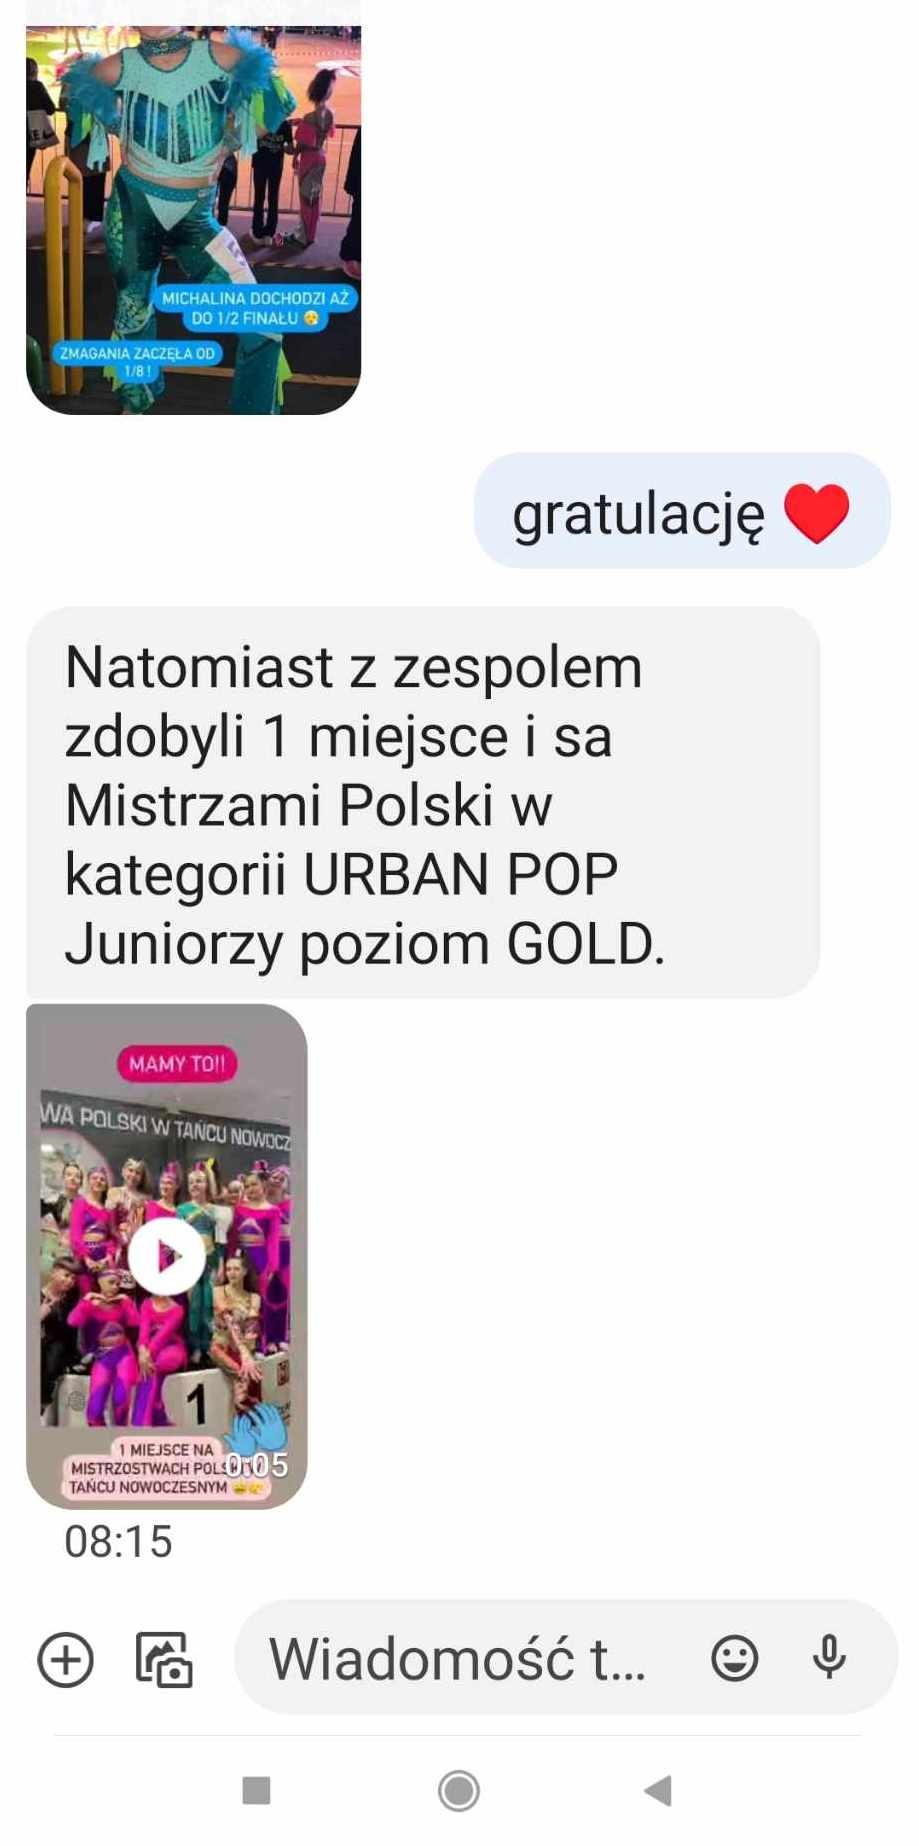 Mistrzostwo Polski z zespołem - Obrazek 1